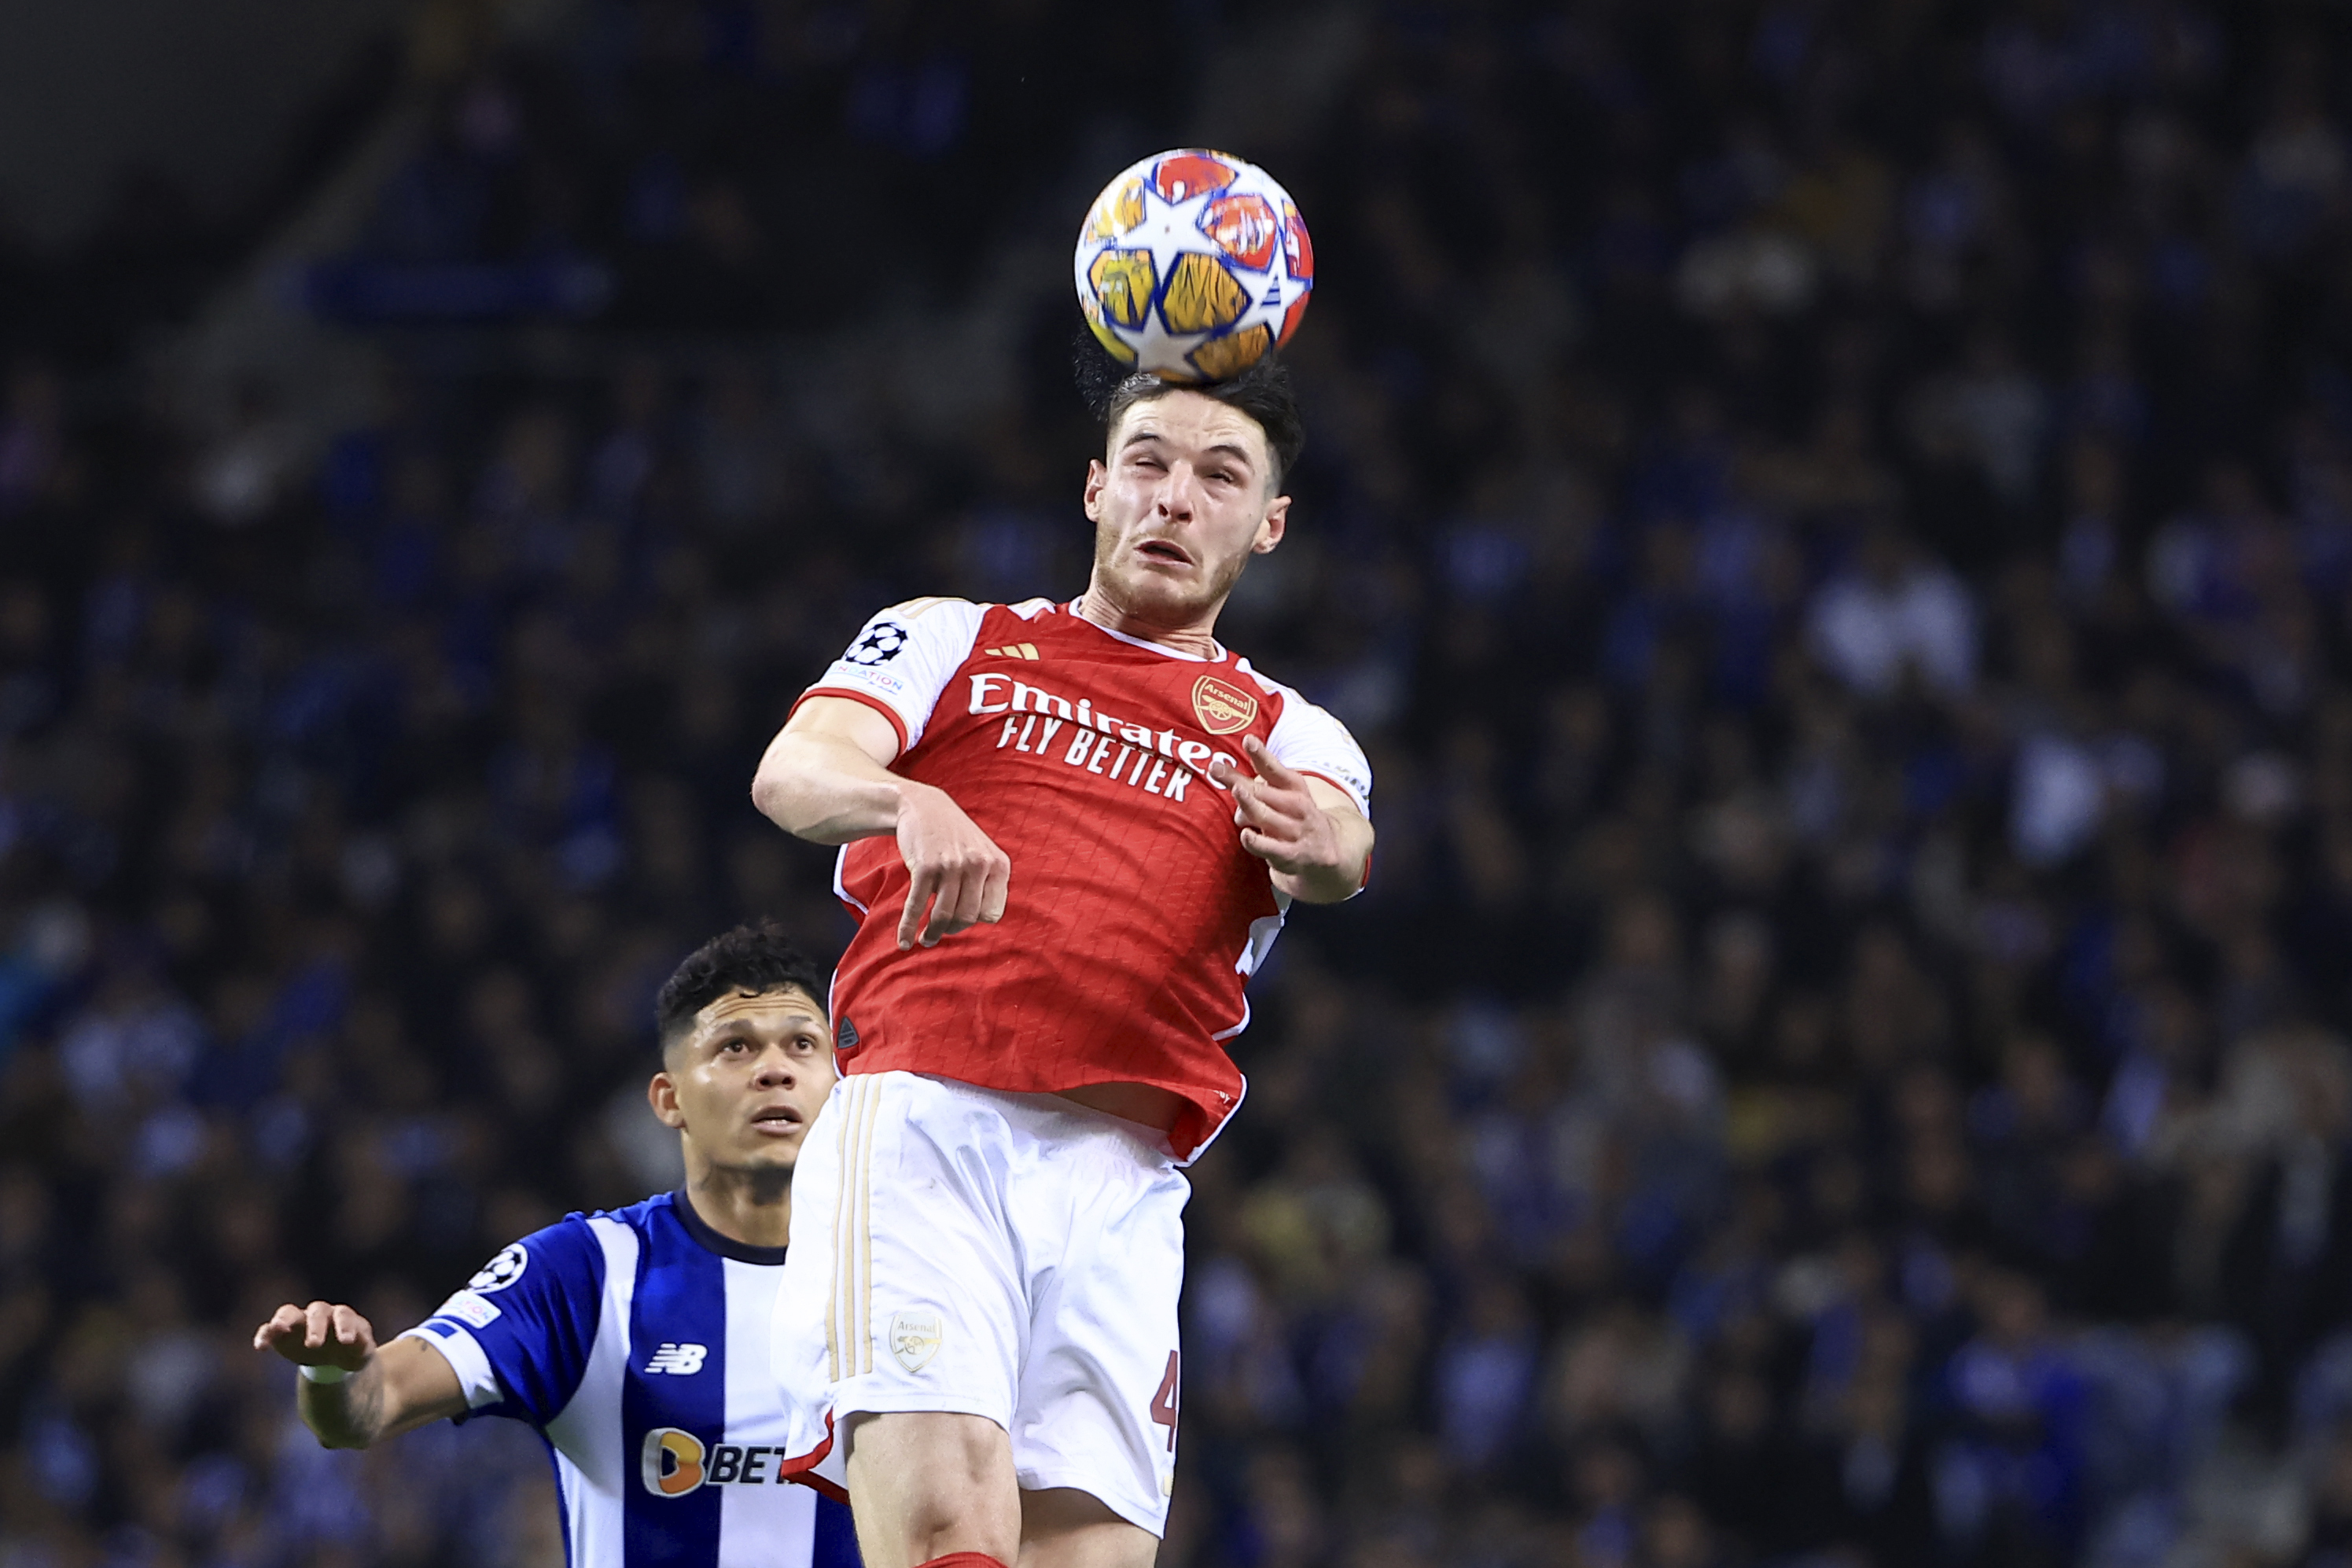 Arsenal’s Declan Rice heads the ball next to Porto’s Evanilson